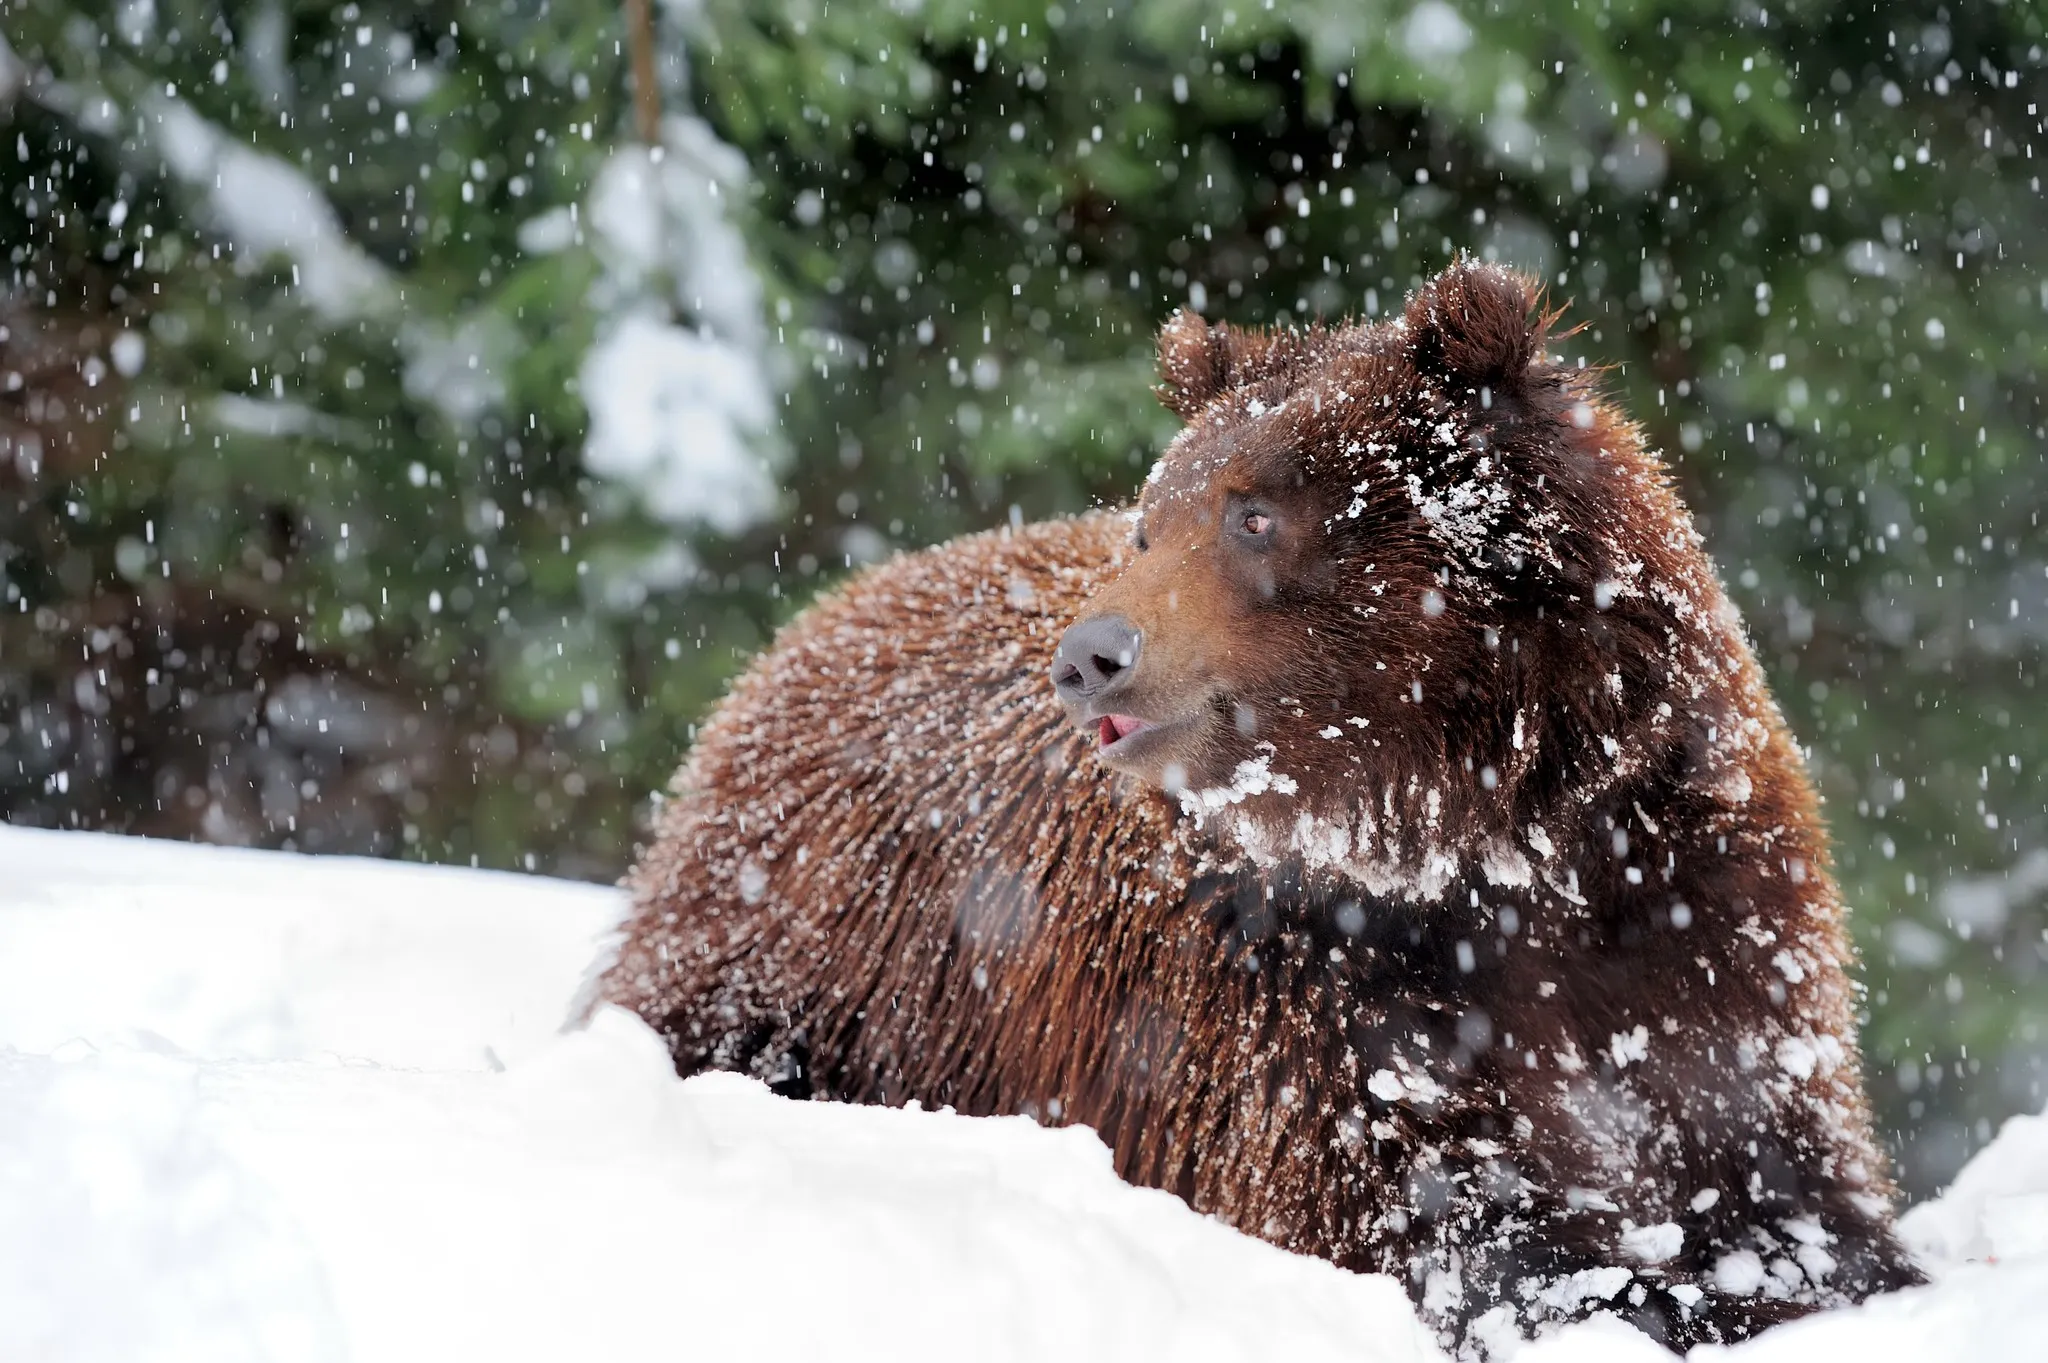 Зимовий сон для бурих ведмедів починається між груднем та лютим